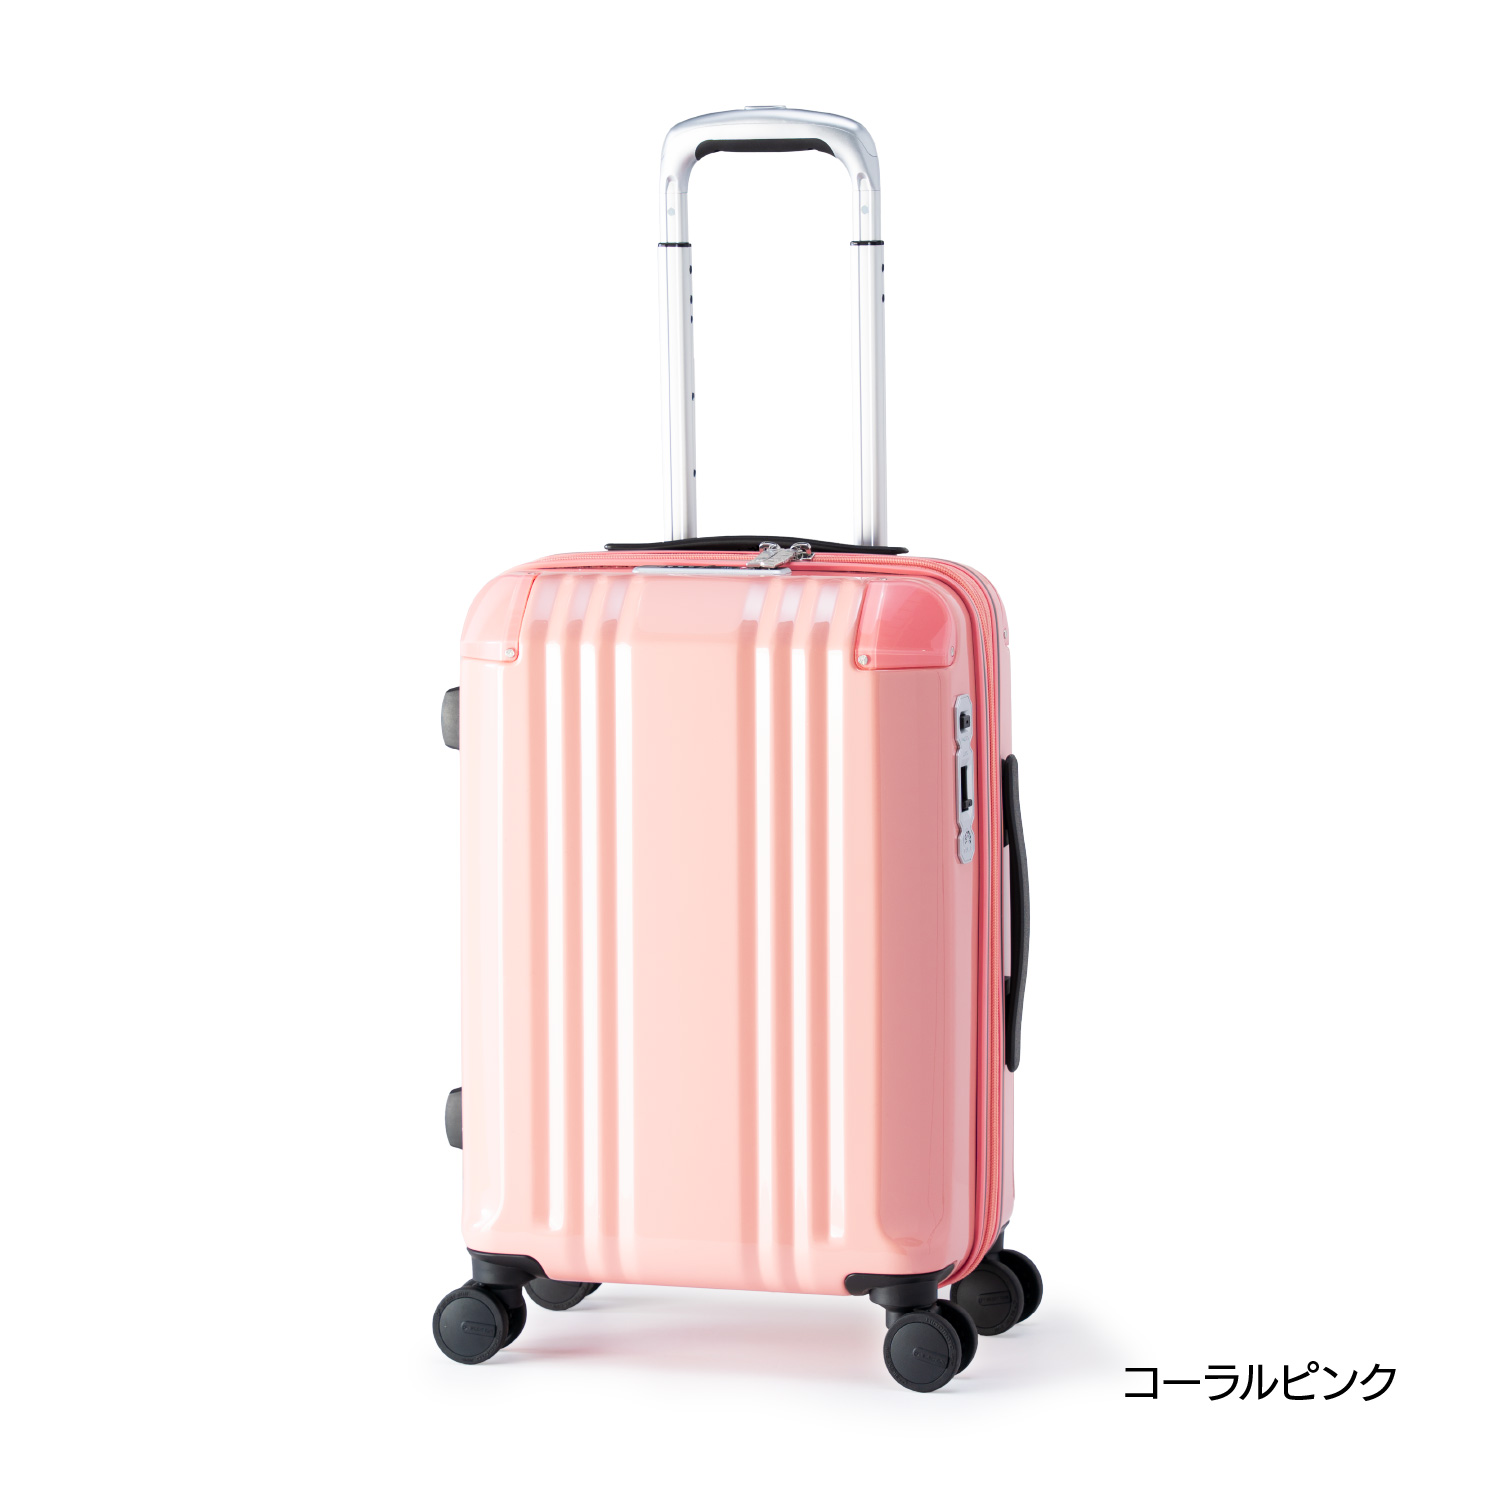 【スーツケース】デカかるEdge　【3〜4泊】34+6L